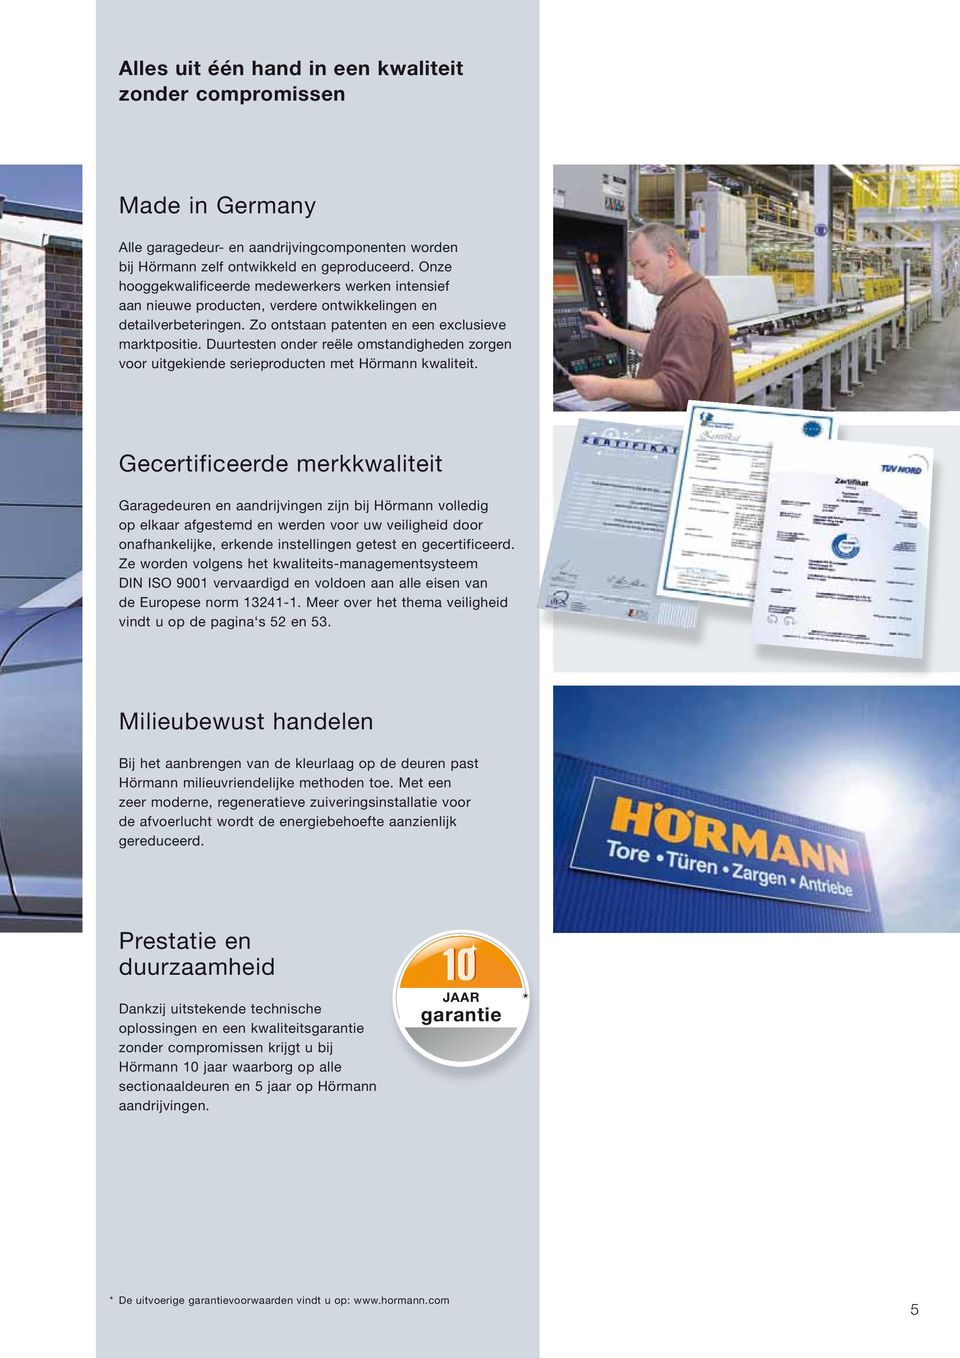 Duurtesten onder reële omstandigheden zorgen voor uitgekiende serieproducten met Hörmann kwaliteit.